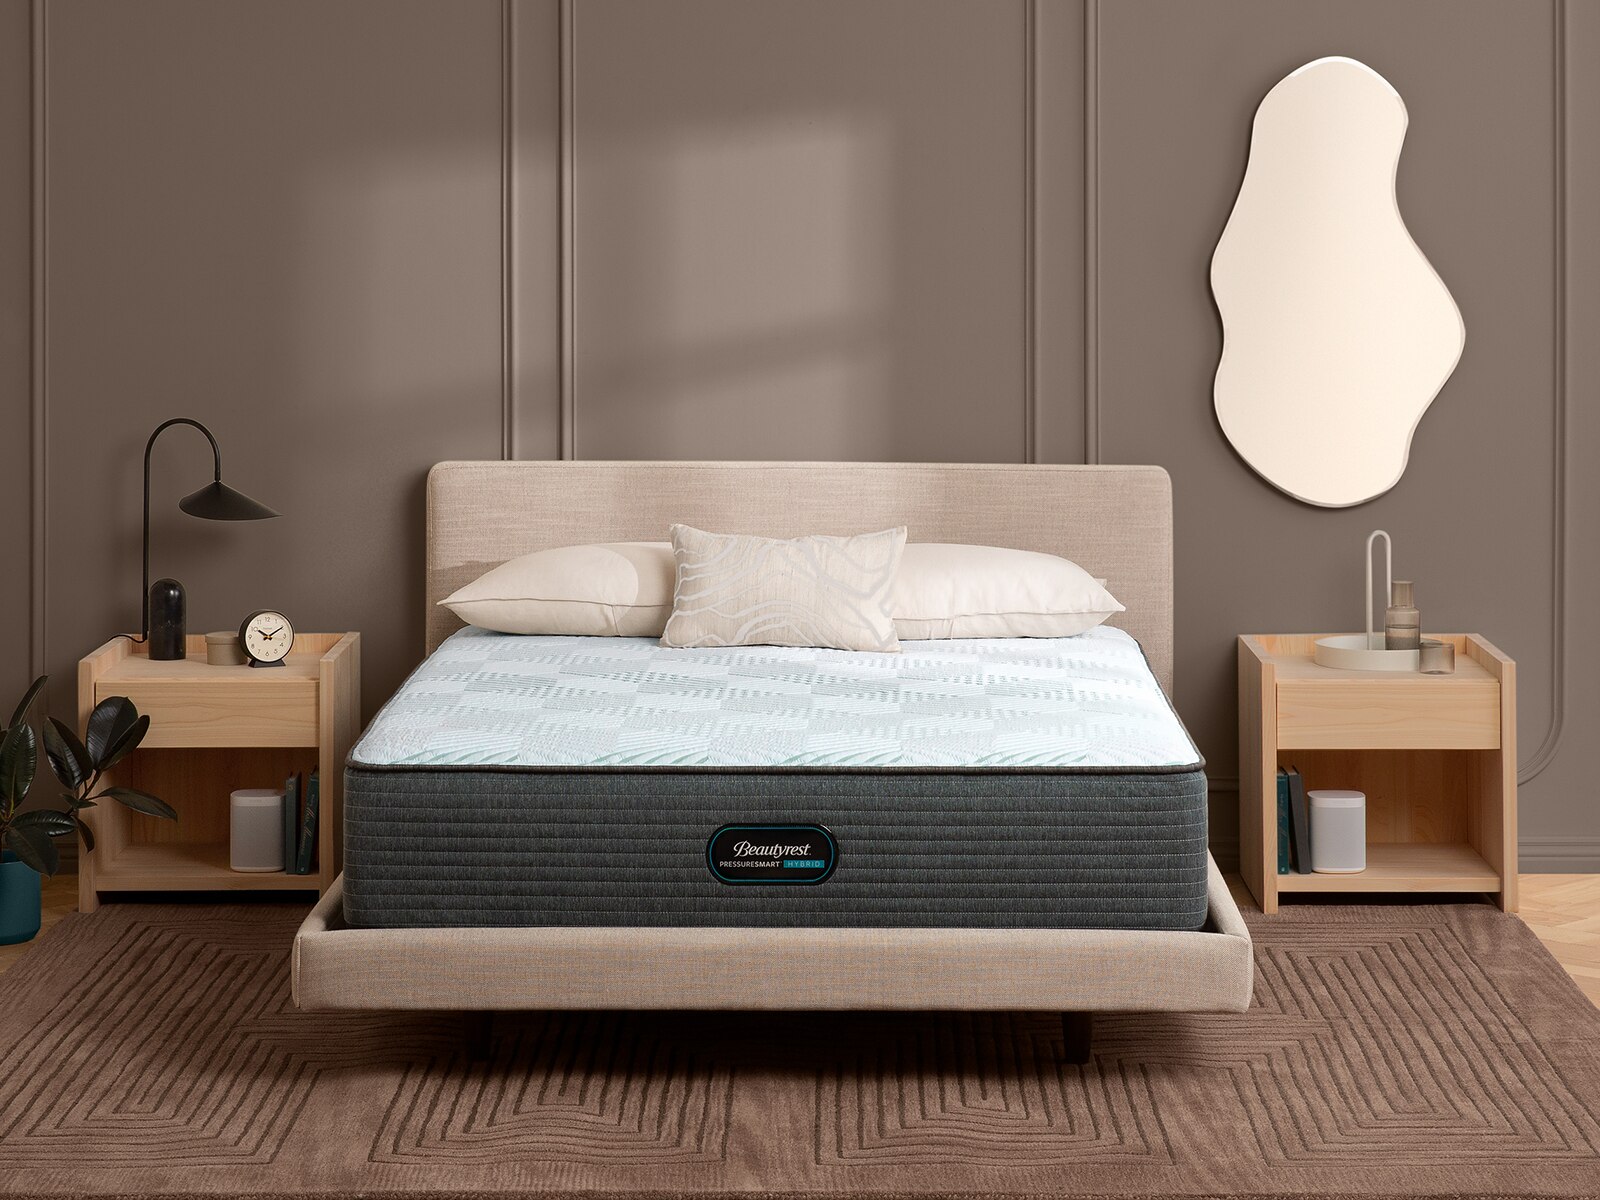 beautyrest pressuresmart 14.75 inch plush mattress stores